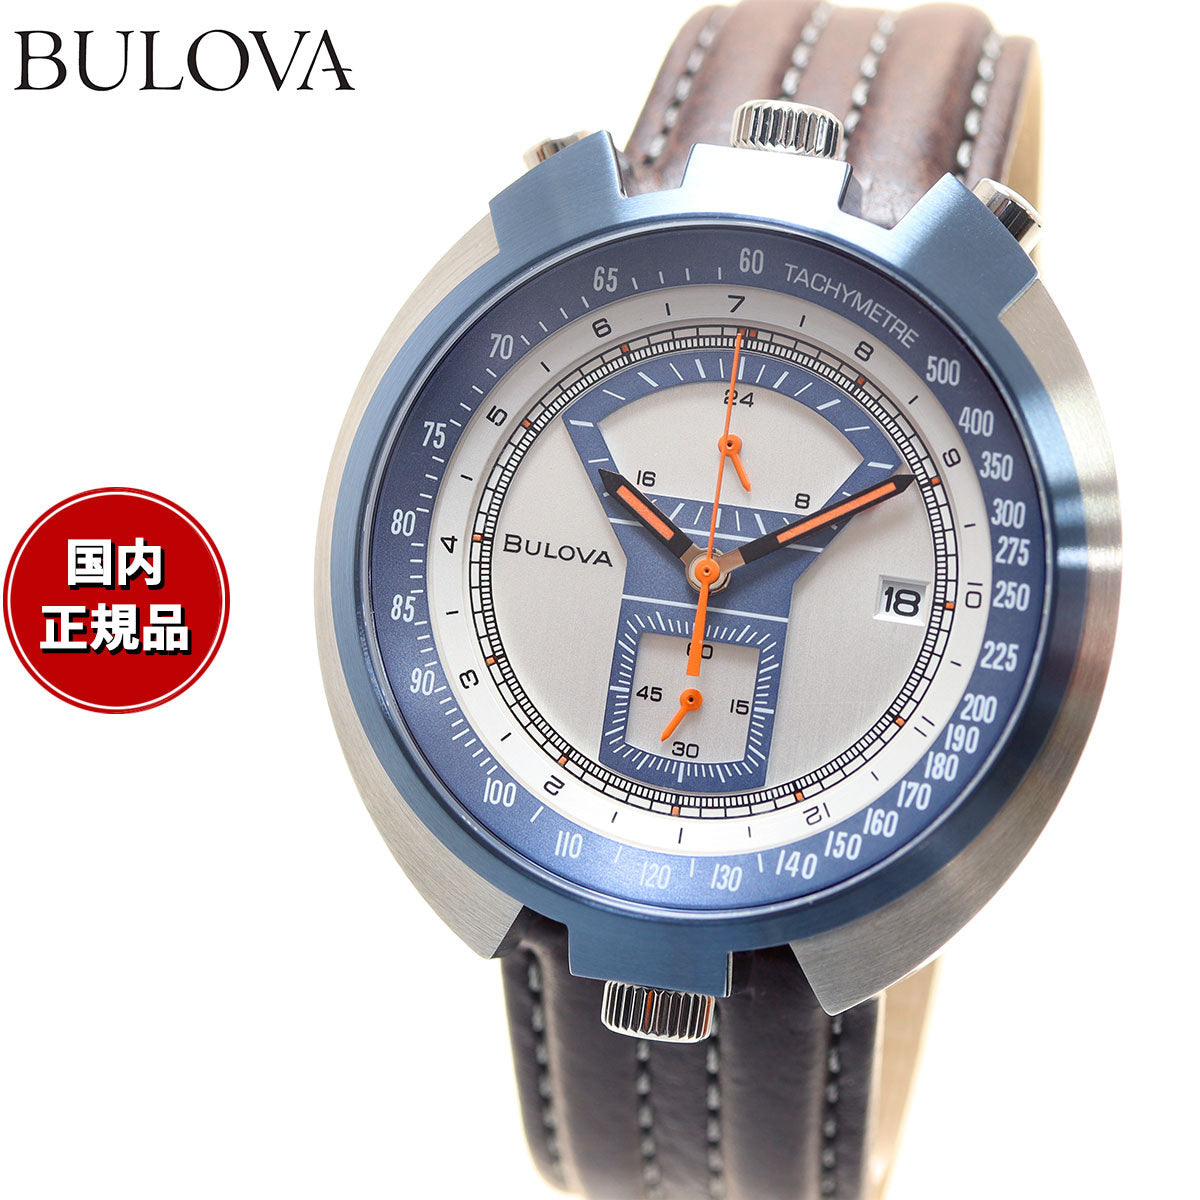 ブローバ BULOVA 腕時計 メンズ アーカイブシリーズ ARCHIVE Series パーキングメーター クロノグラフ Parking meter  世界限定モデル 98B390